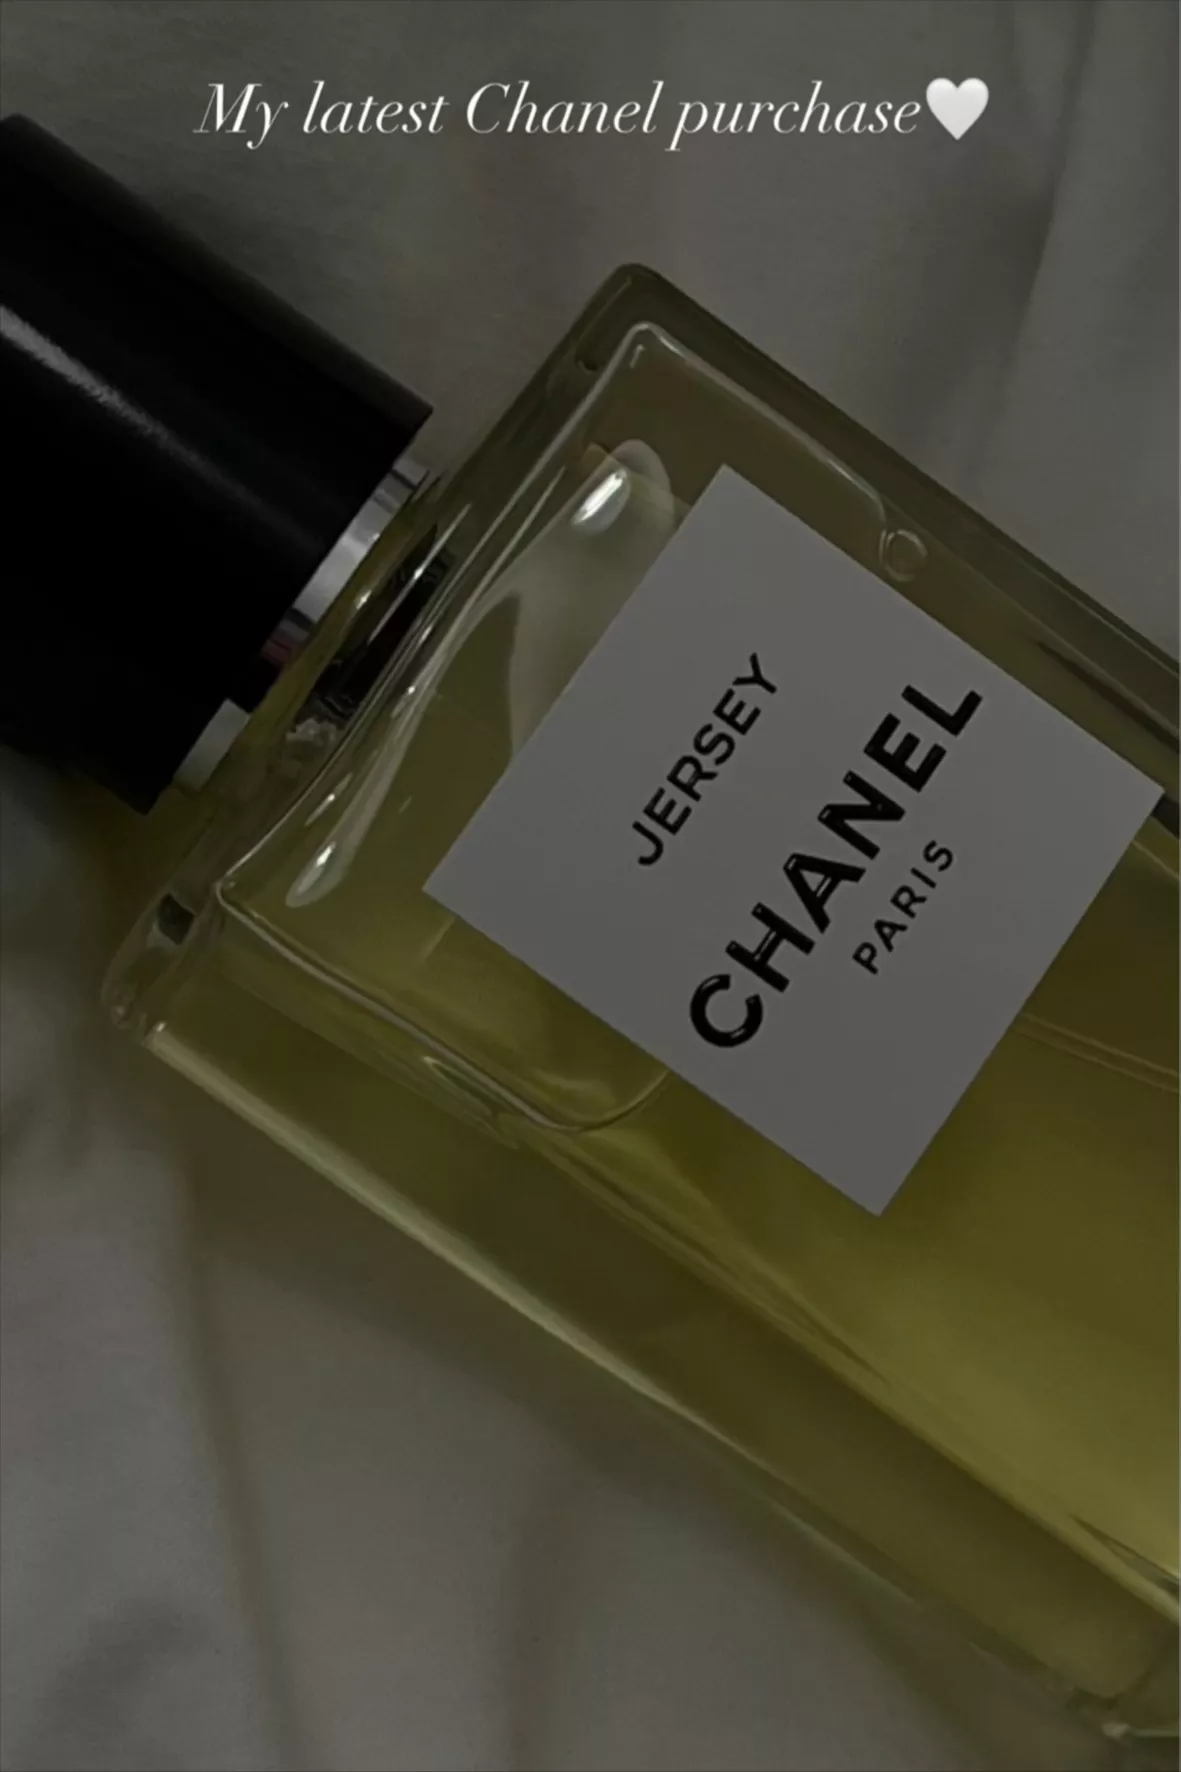 Les Exclusifs de Chanel Jersey for women – Meet Me Scent